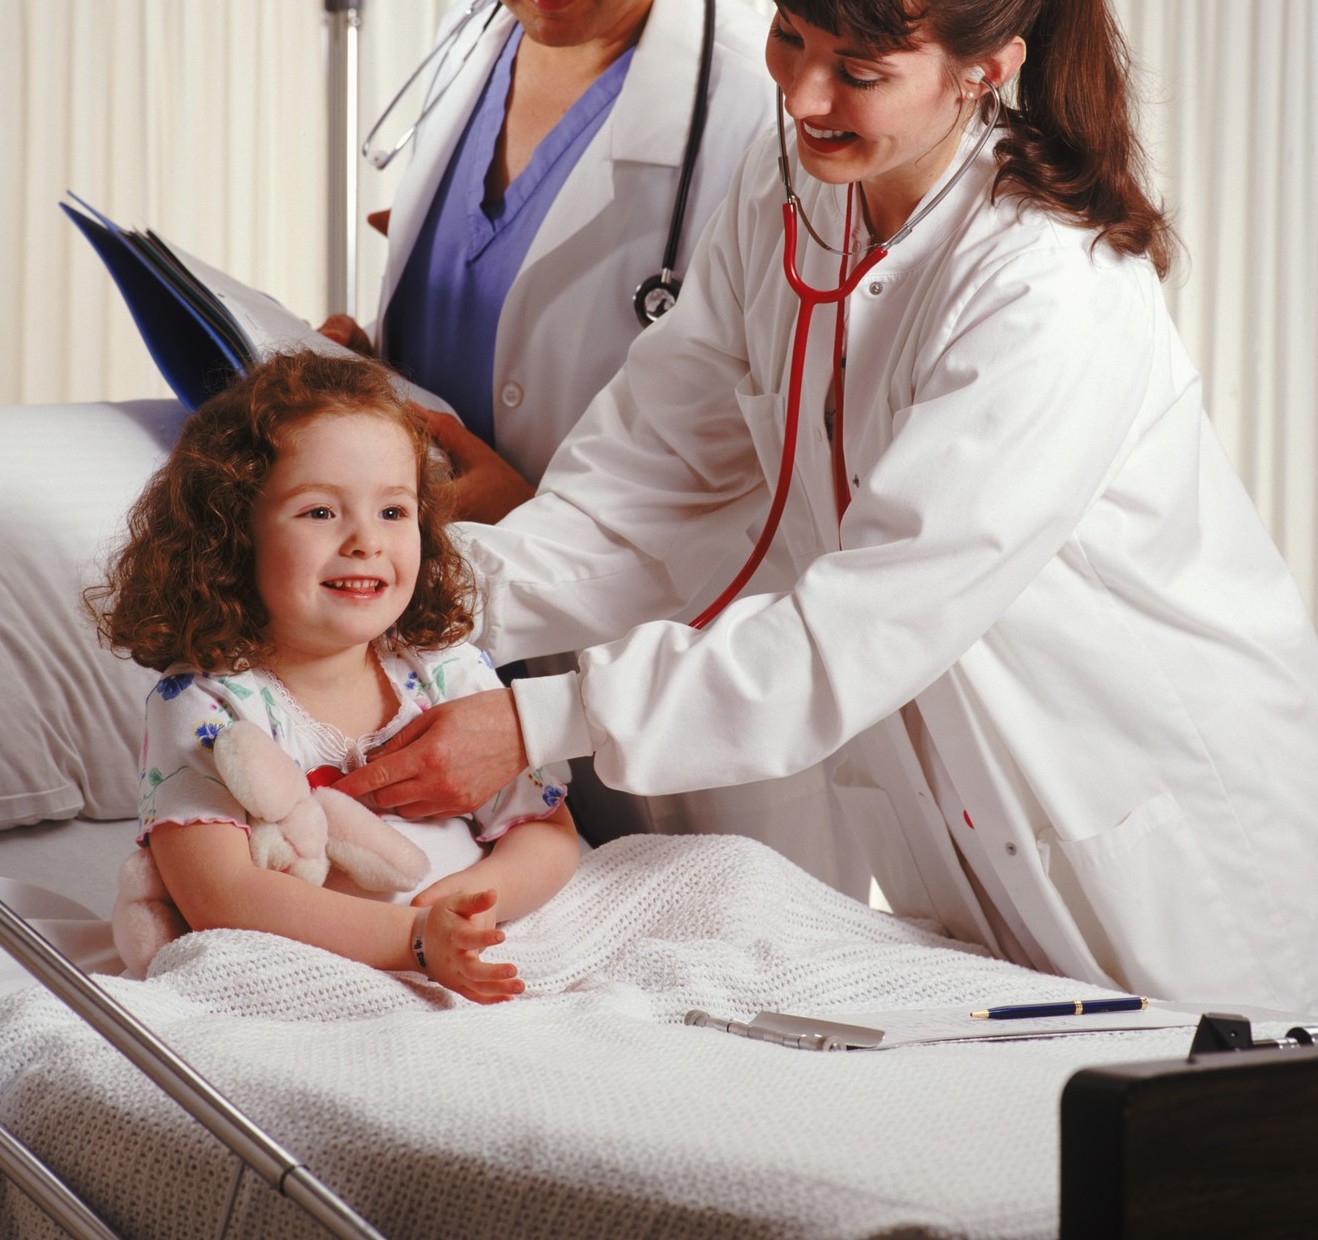 Фото врачей за работой с детьми